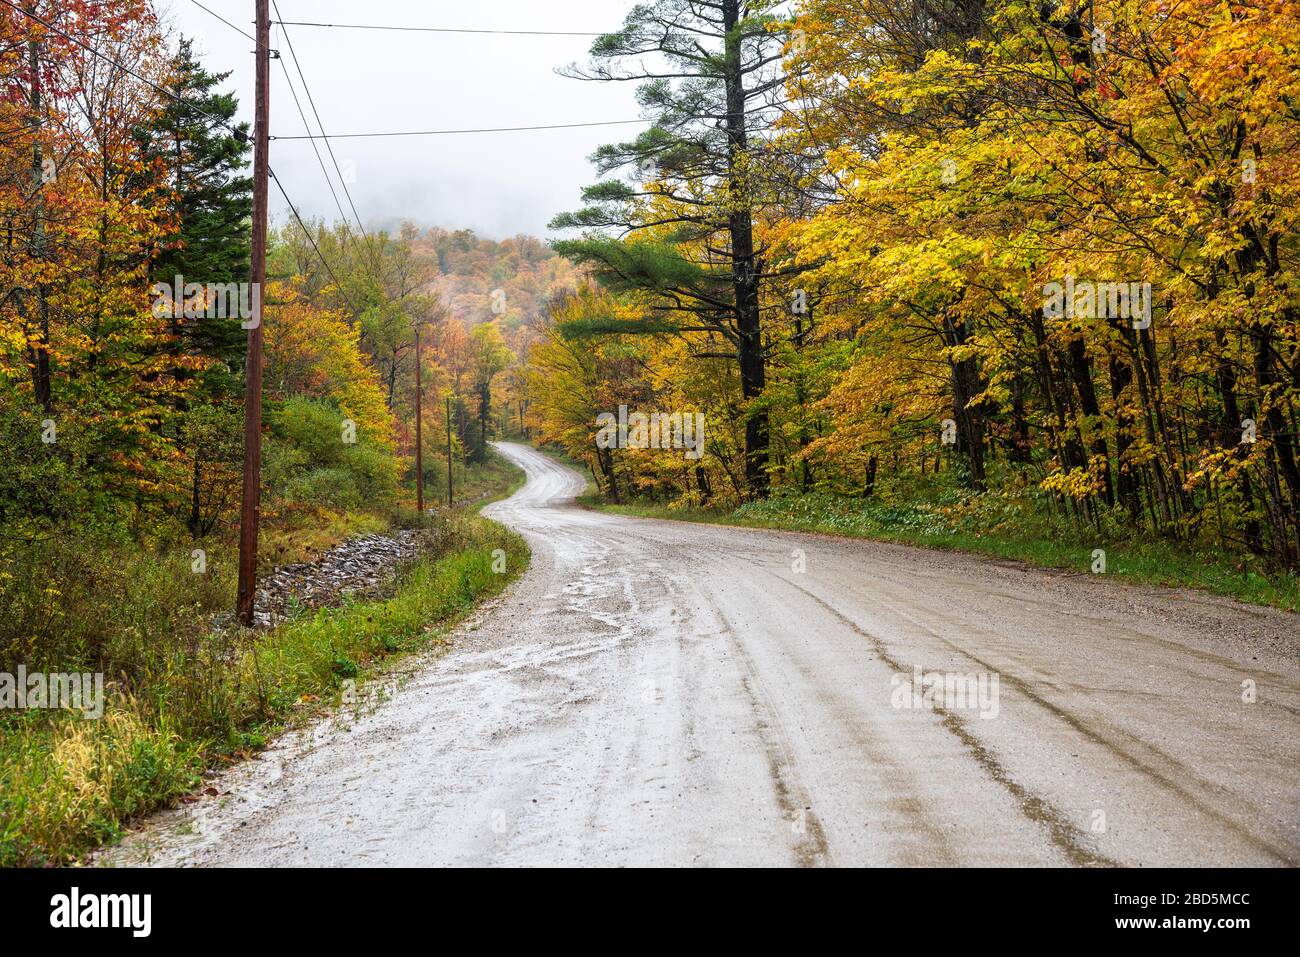 Tortueux chemin de montagne boueux à travers une forêt colorée lors d'un jour d'automne pluvieux. Belles couleurs d'automne. Banque D'Images